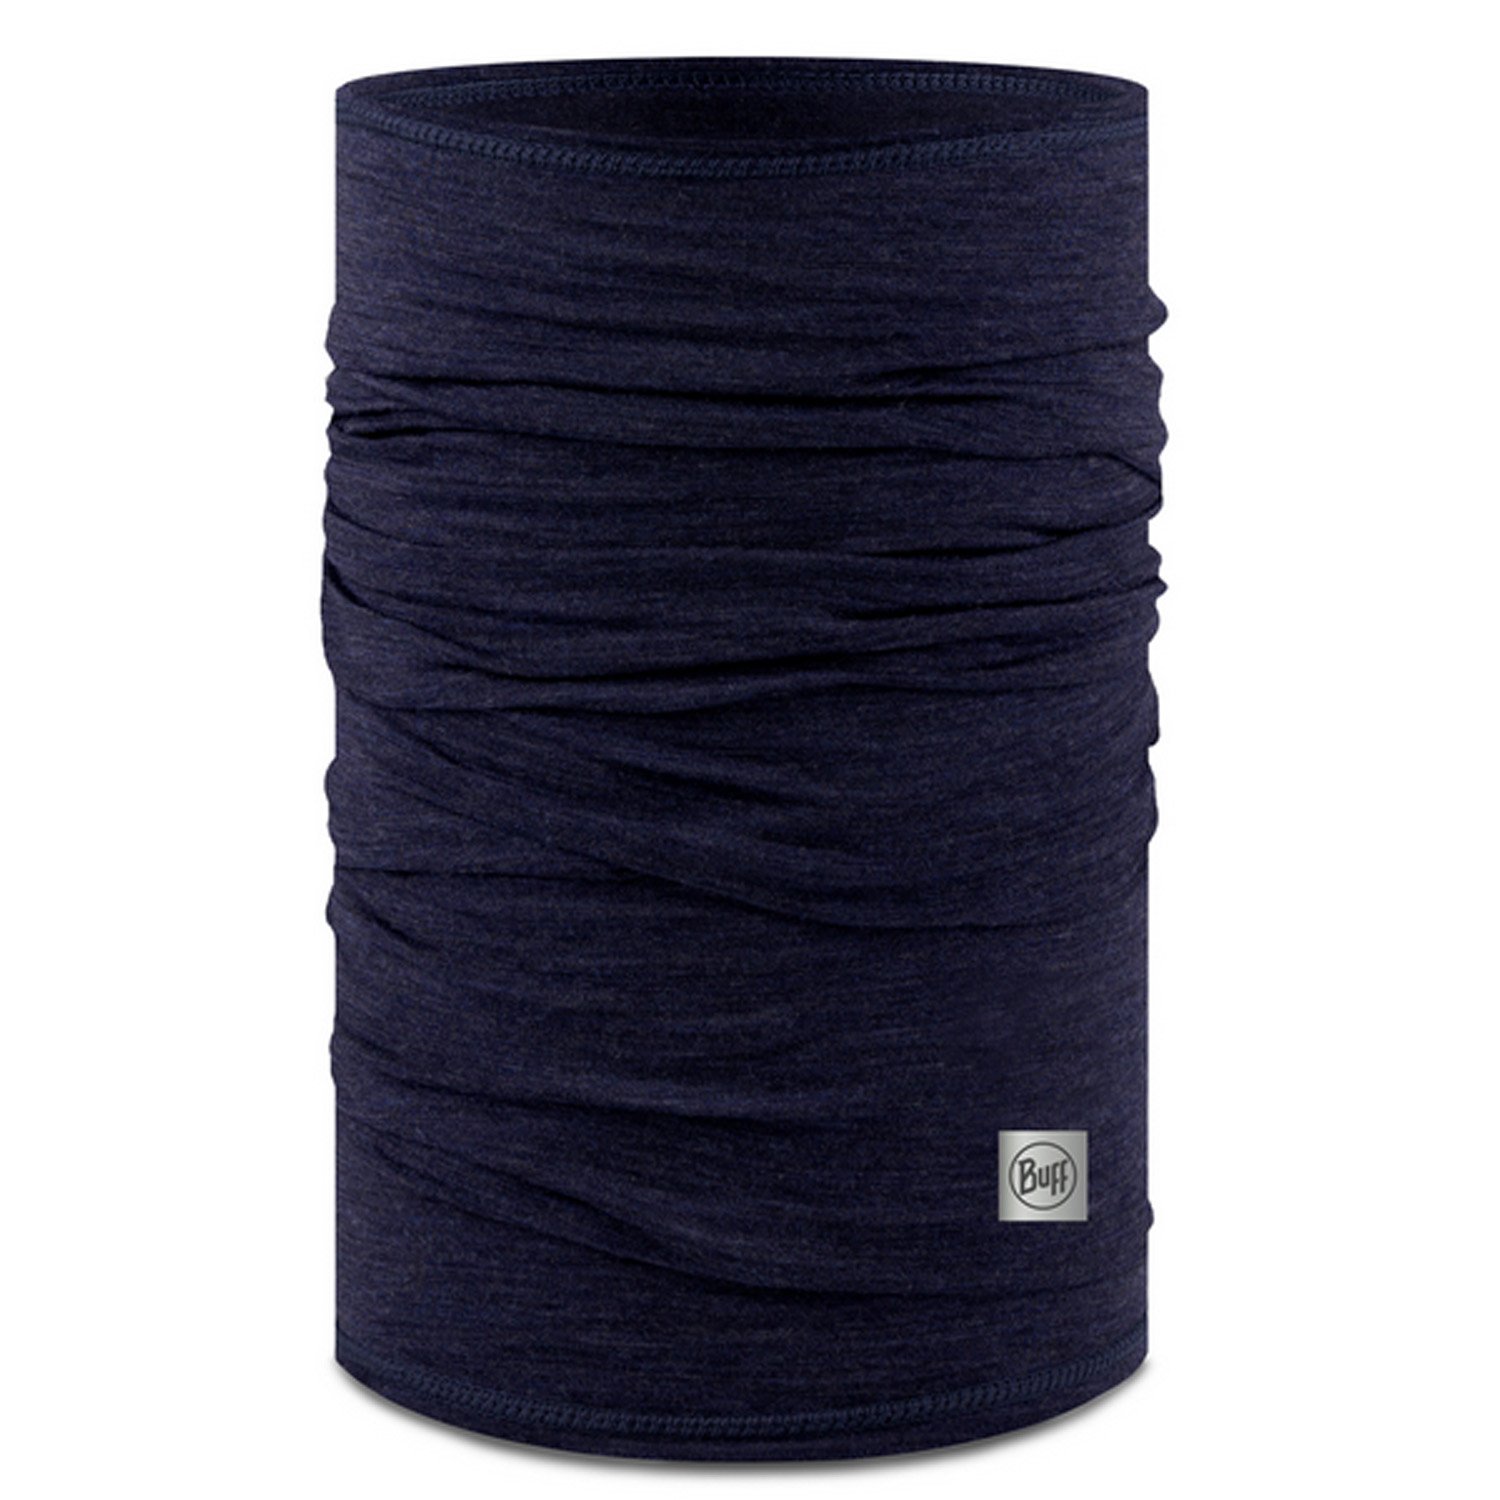 Бандана Buff Lightweight Merino Wool Solid Night, синий, 2023, 132280.779.10.00 рюкзак ninetygo tiny lightweight casual backpack синий